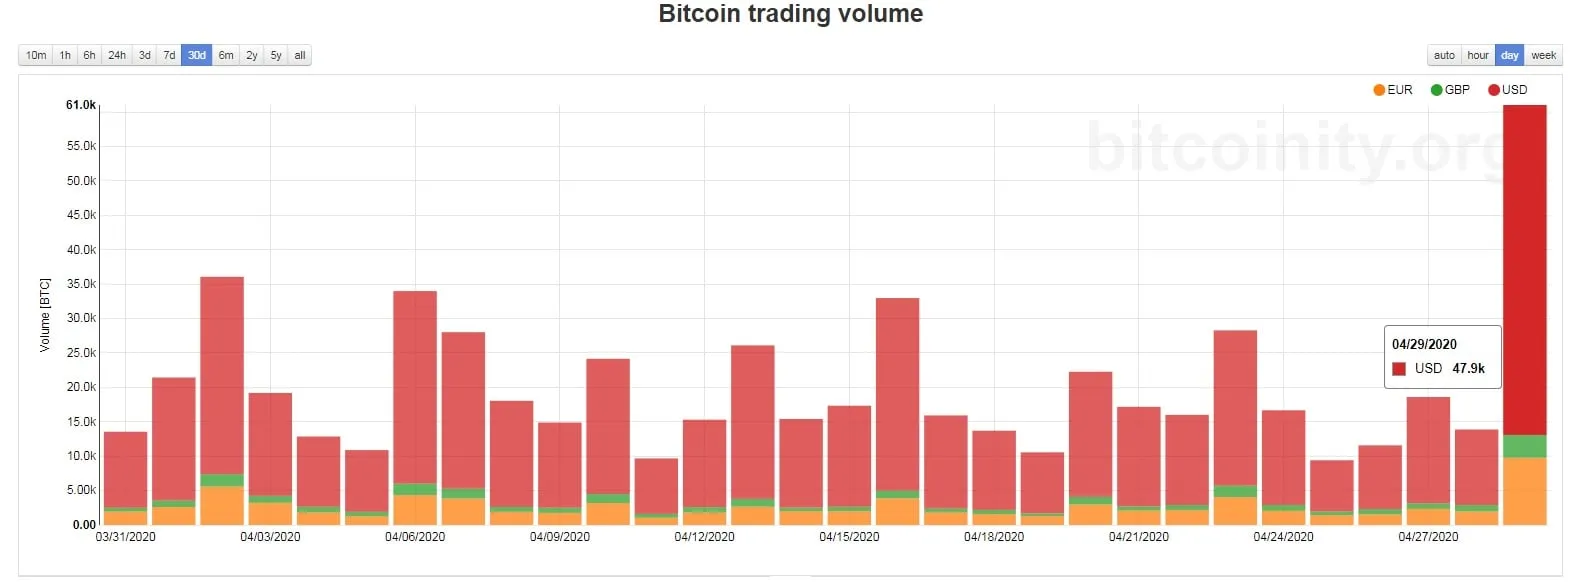 Los volúmenes de comercio de Bitcoin aumentaron a finales de abril. Imagen: Bitcoinity